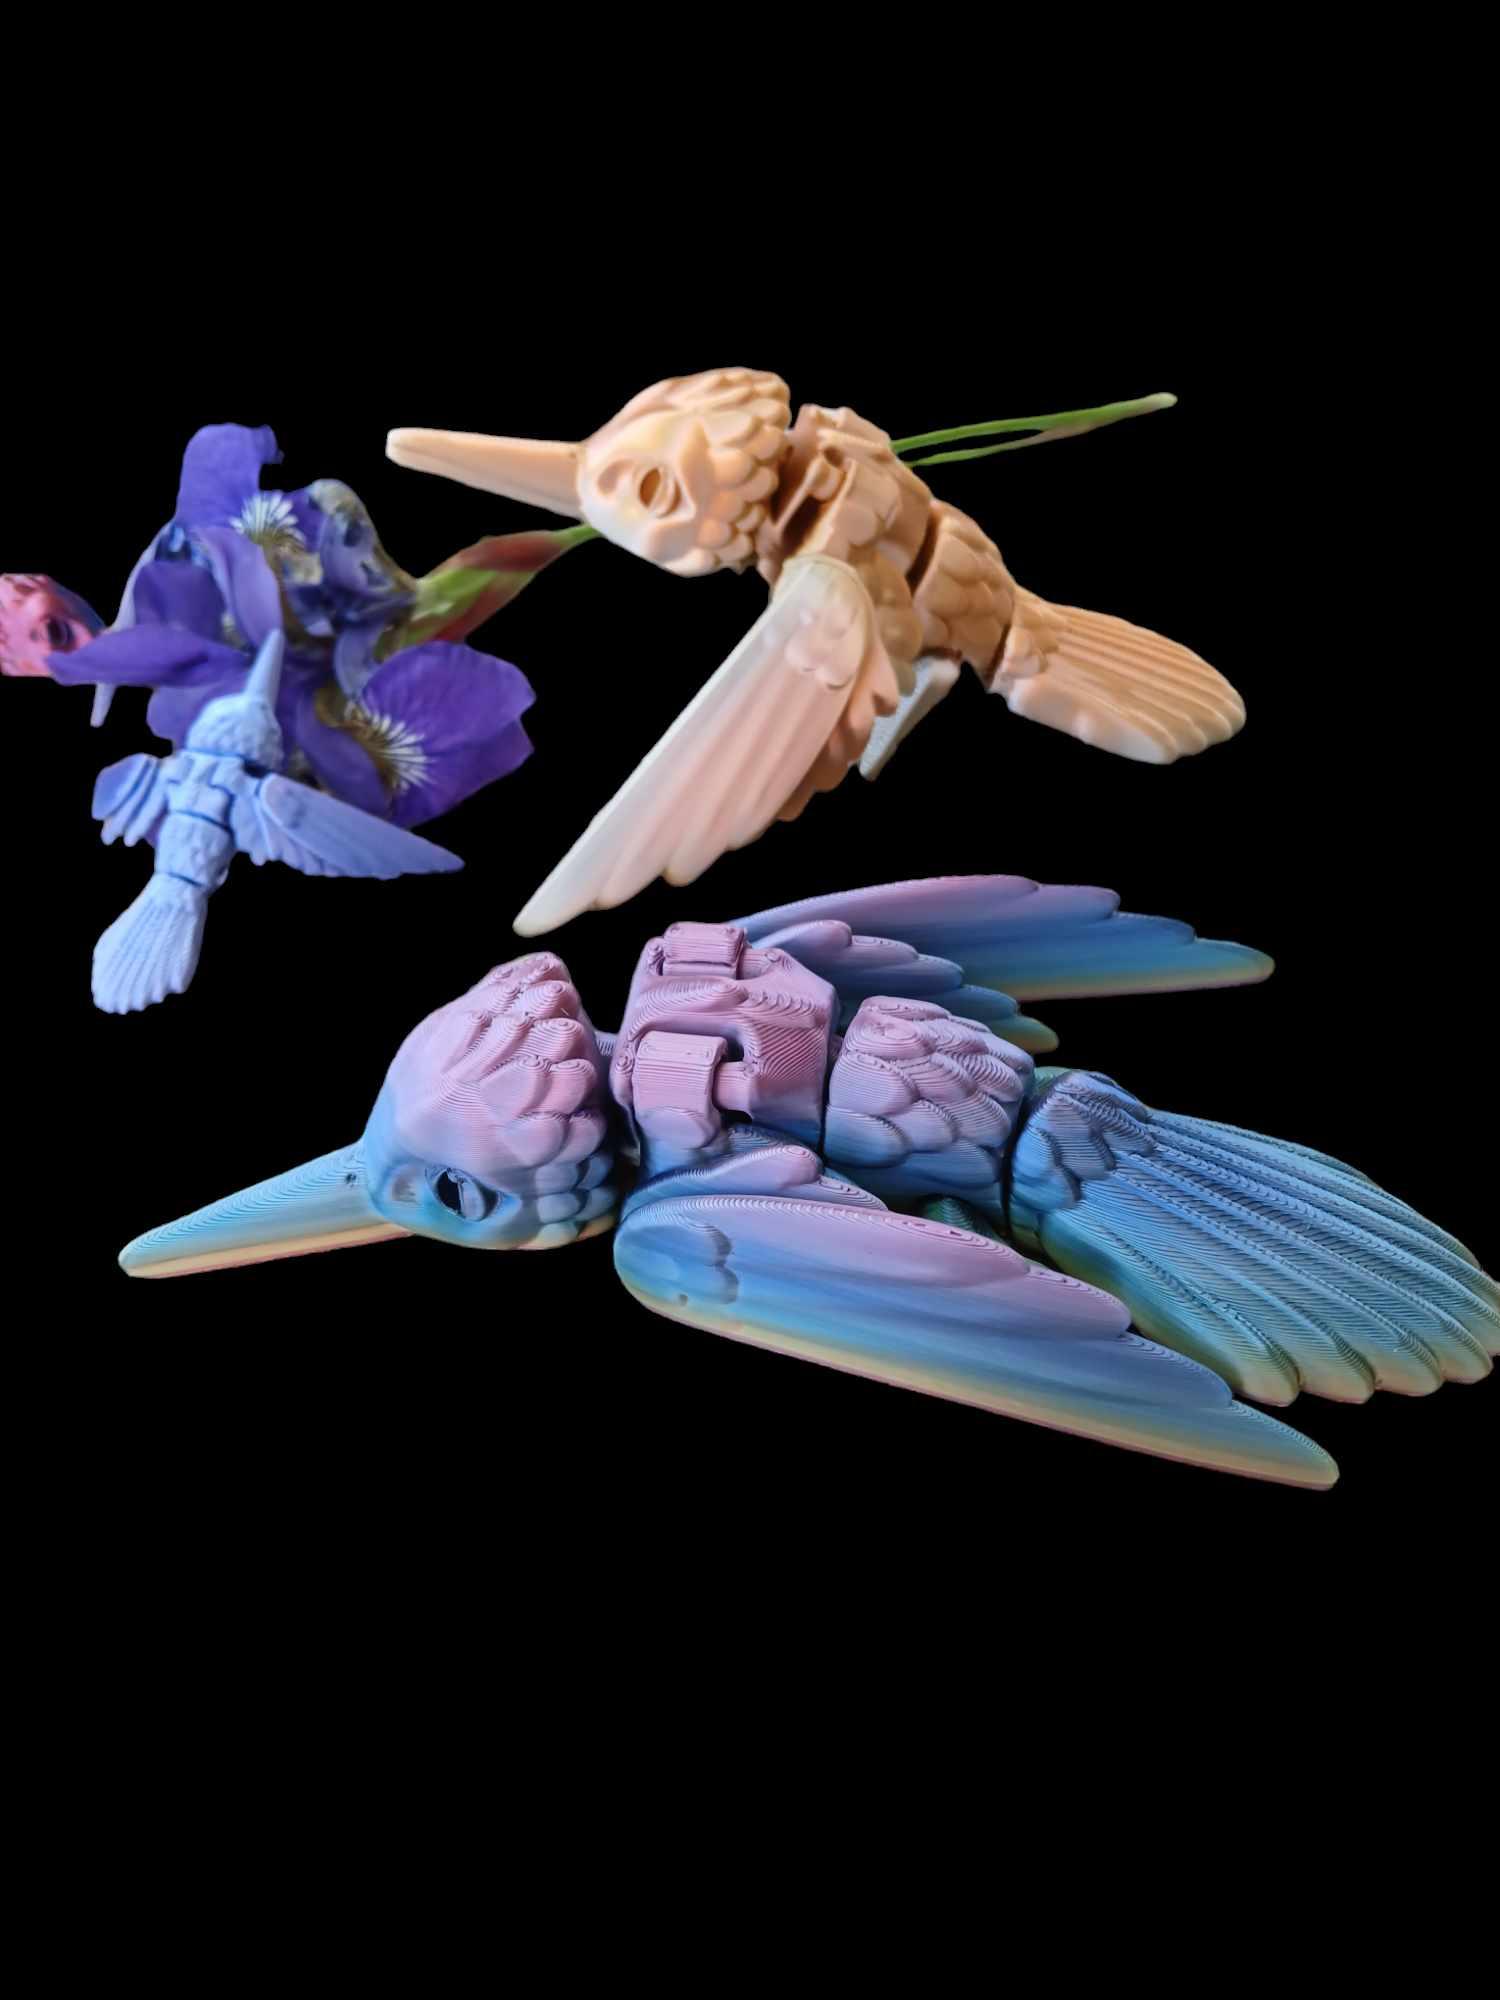 Hummingbird 3d model